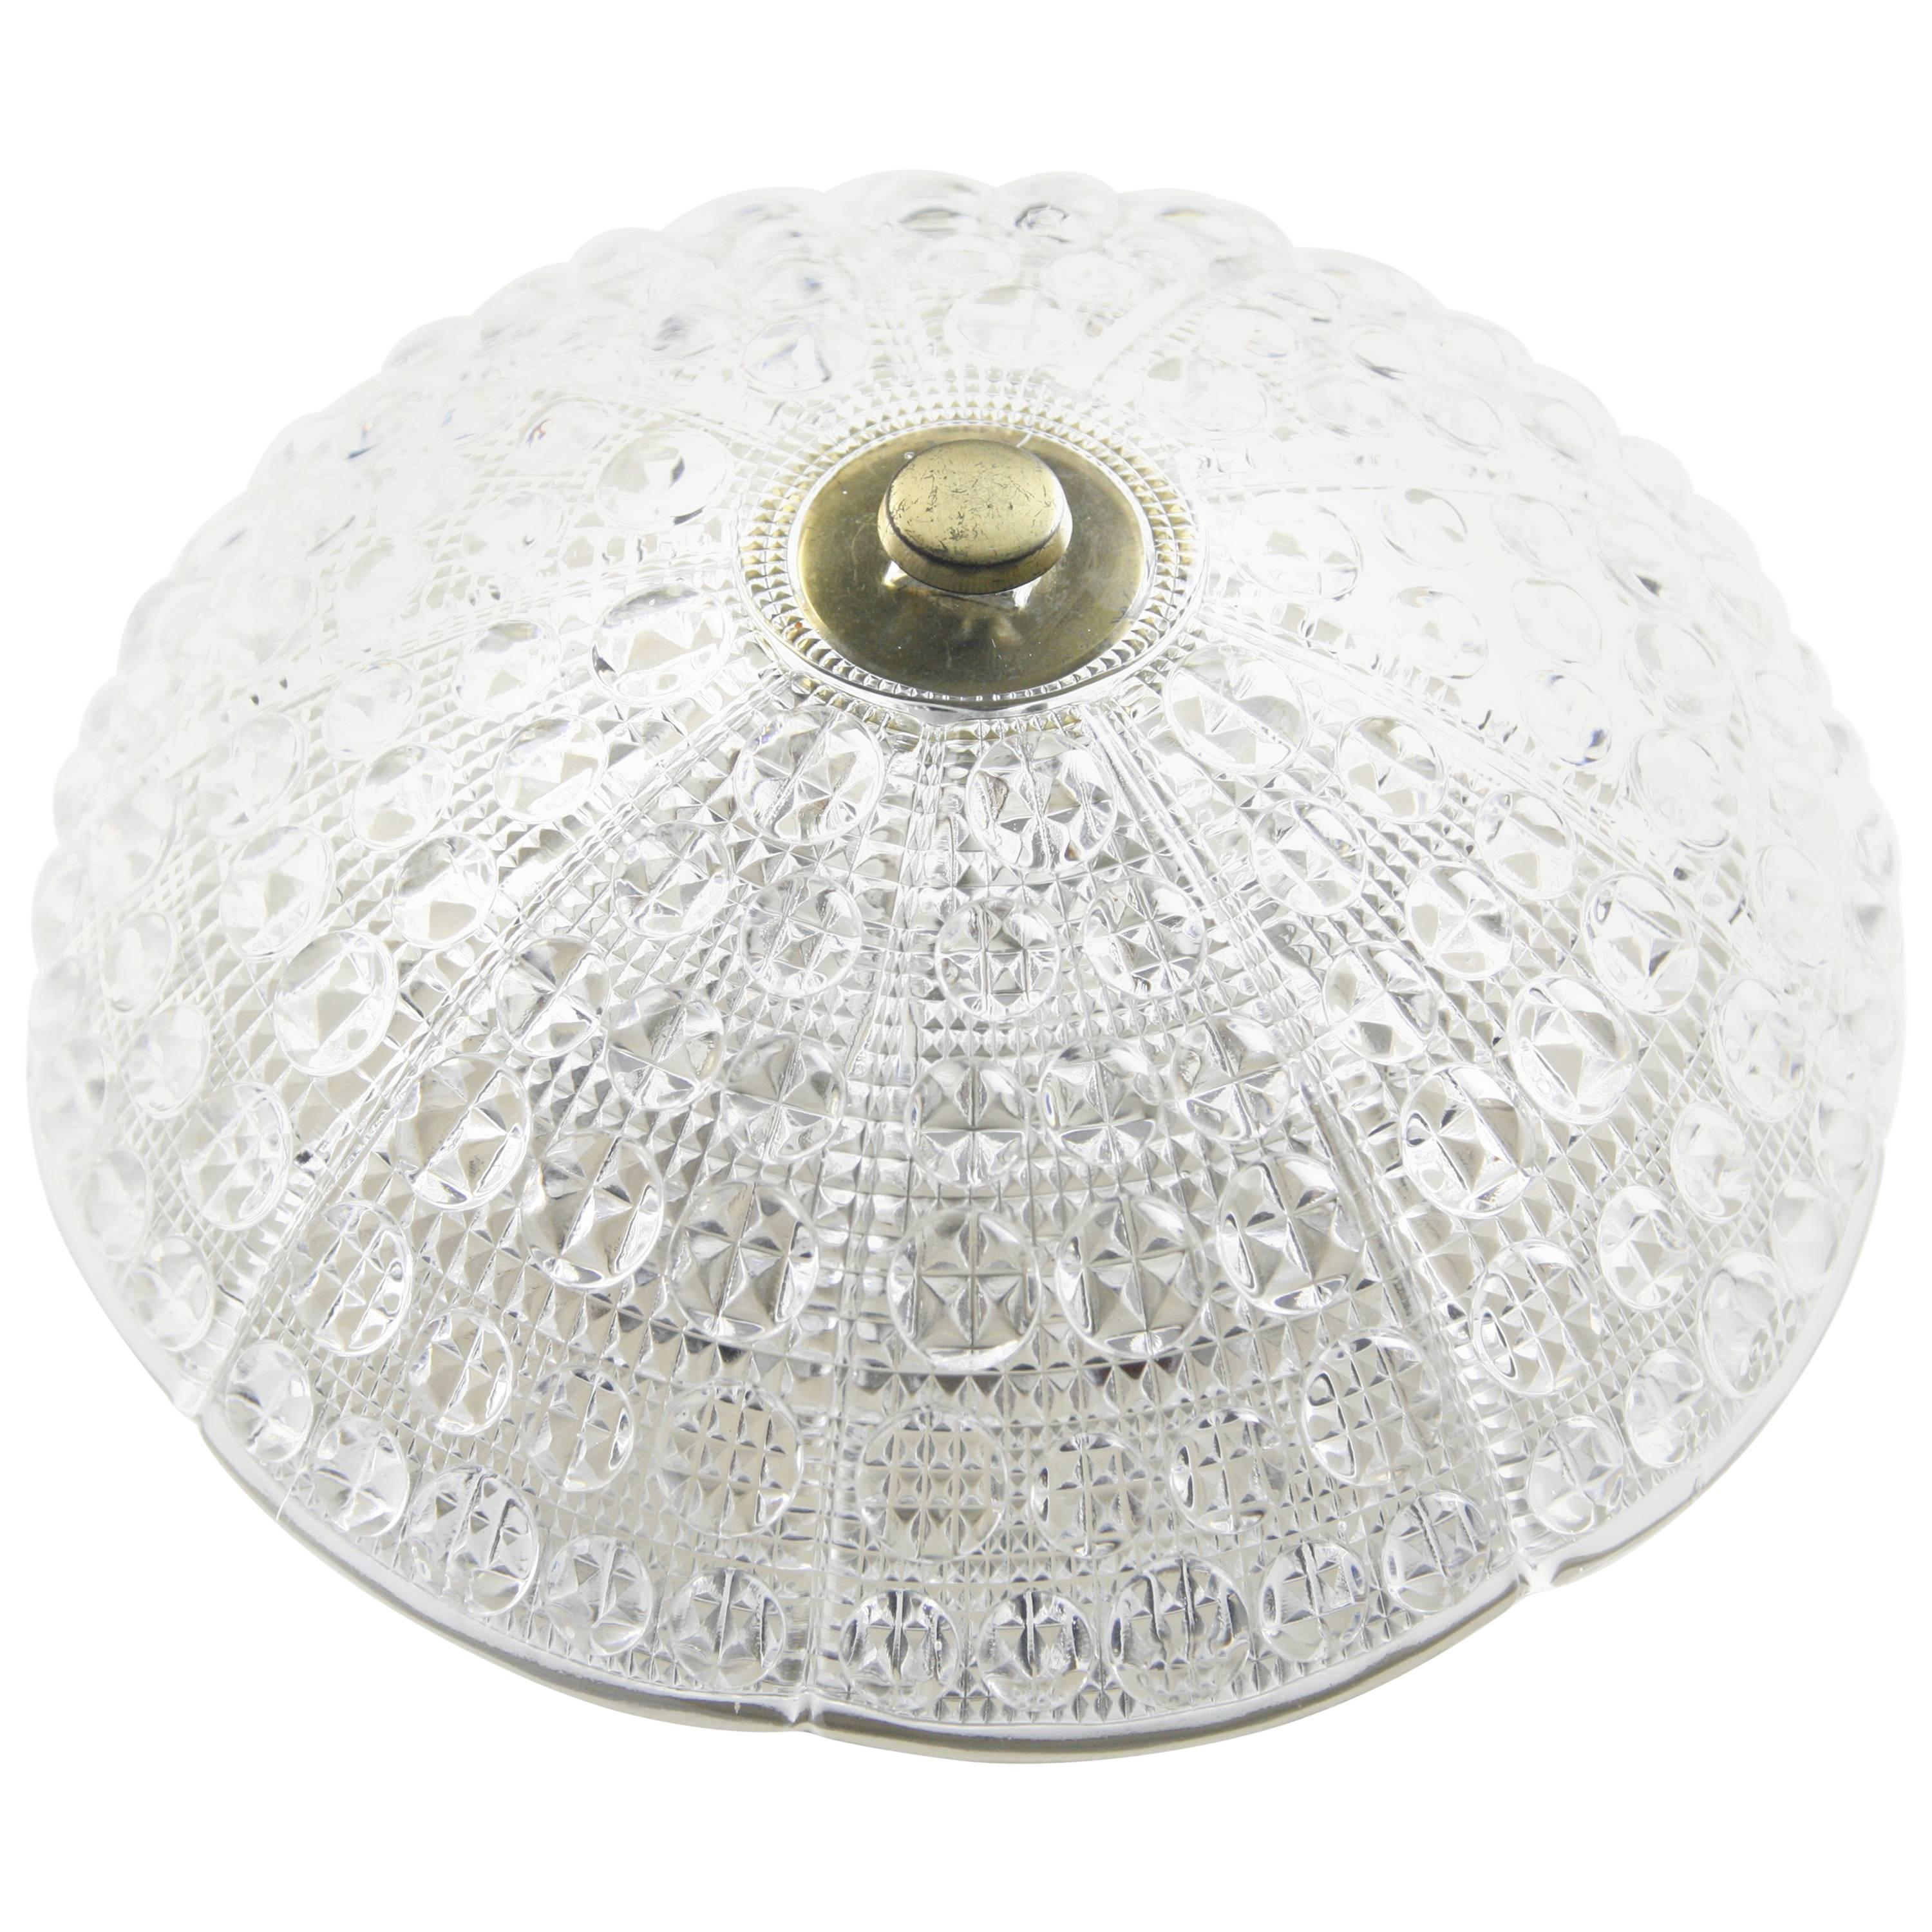 Die Orrefors Deckenplatte ist aus cremeweißem Metall und hat sechs europäische Kandelaberfassungen. Der Schirm ist ein kuppelförmiges, gepresstes Kristallglas mit Details aus Messing.

 